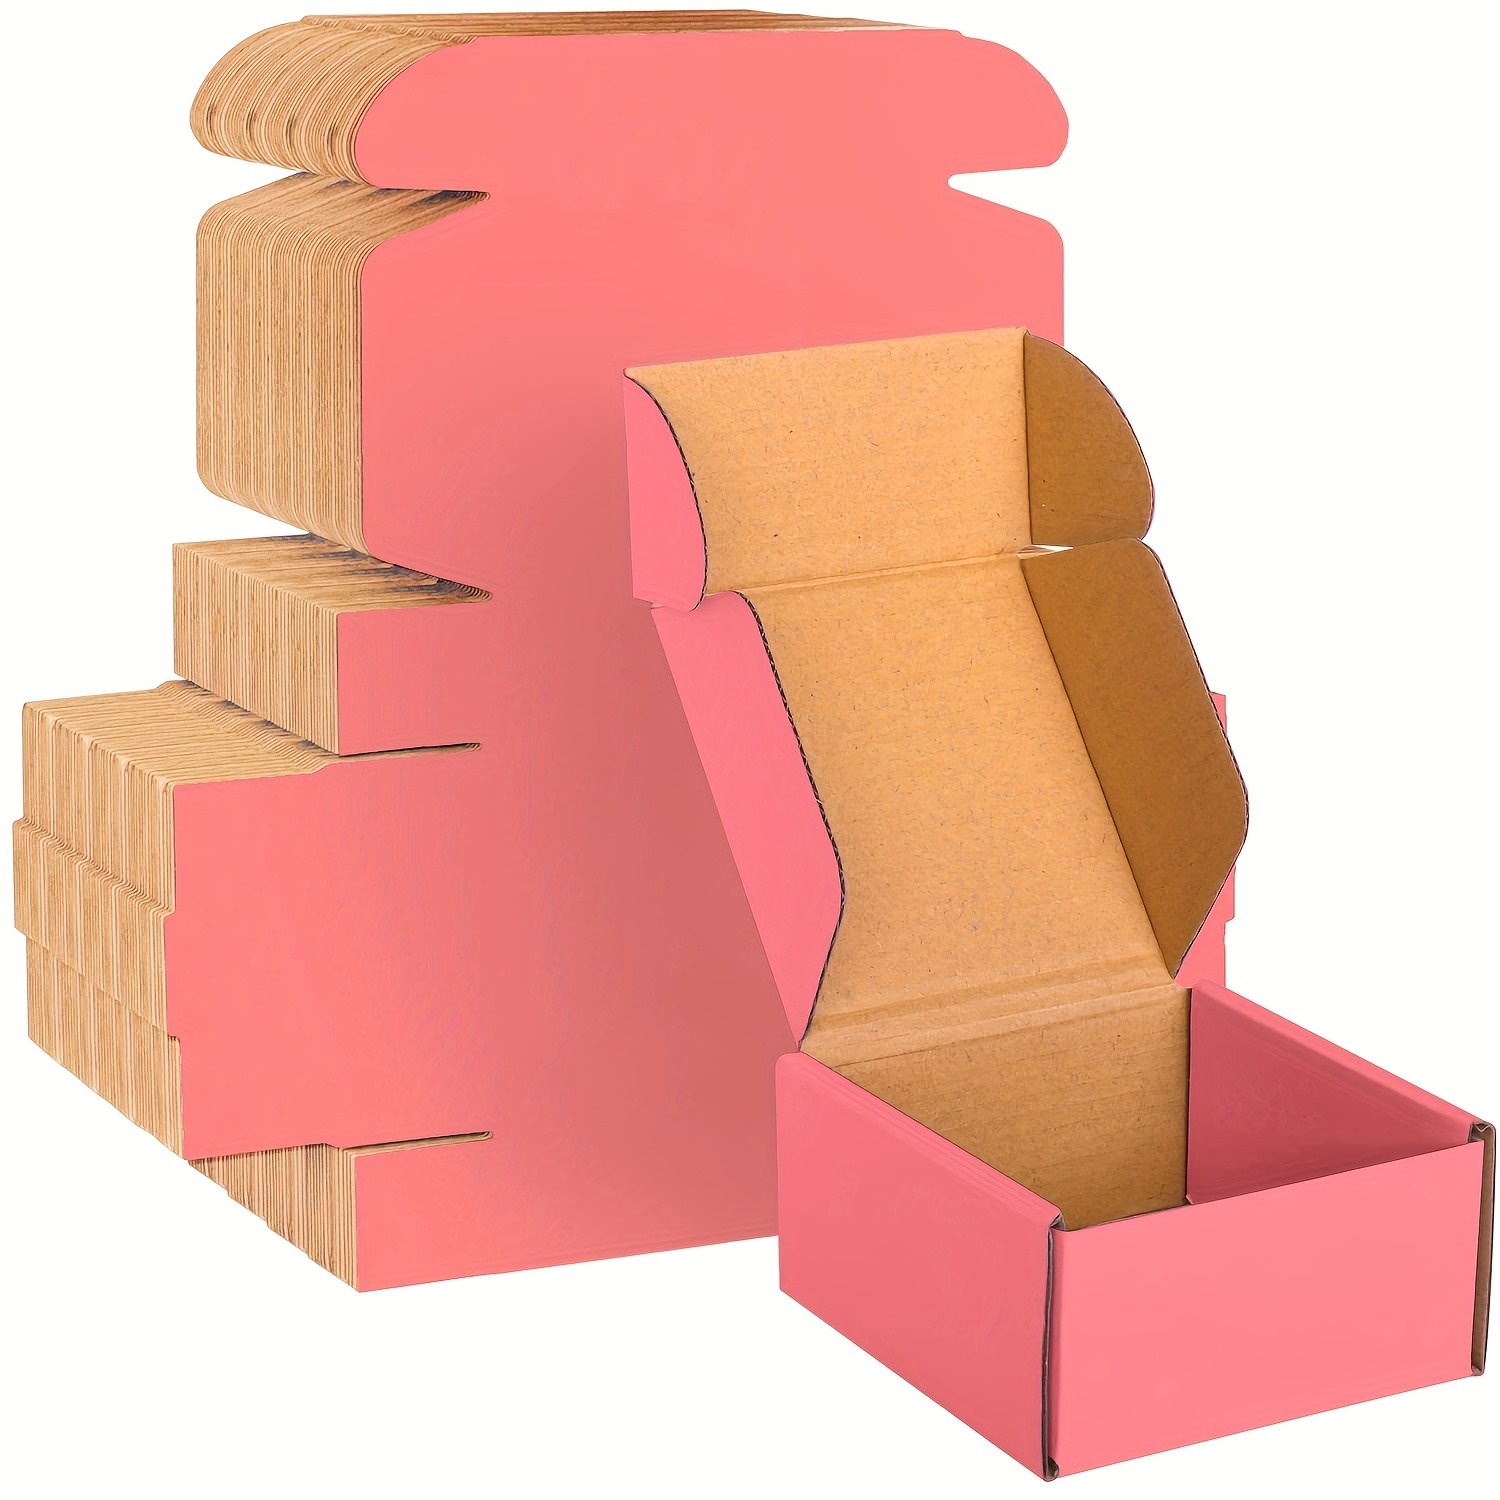 Caja Cartón Rosa para chuches – 500 gr. – Oomuombo